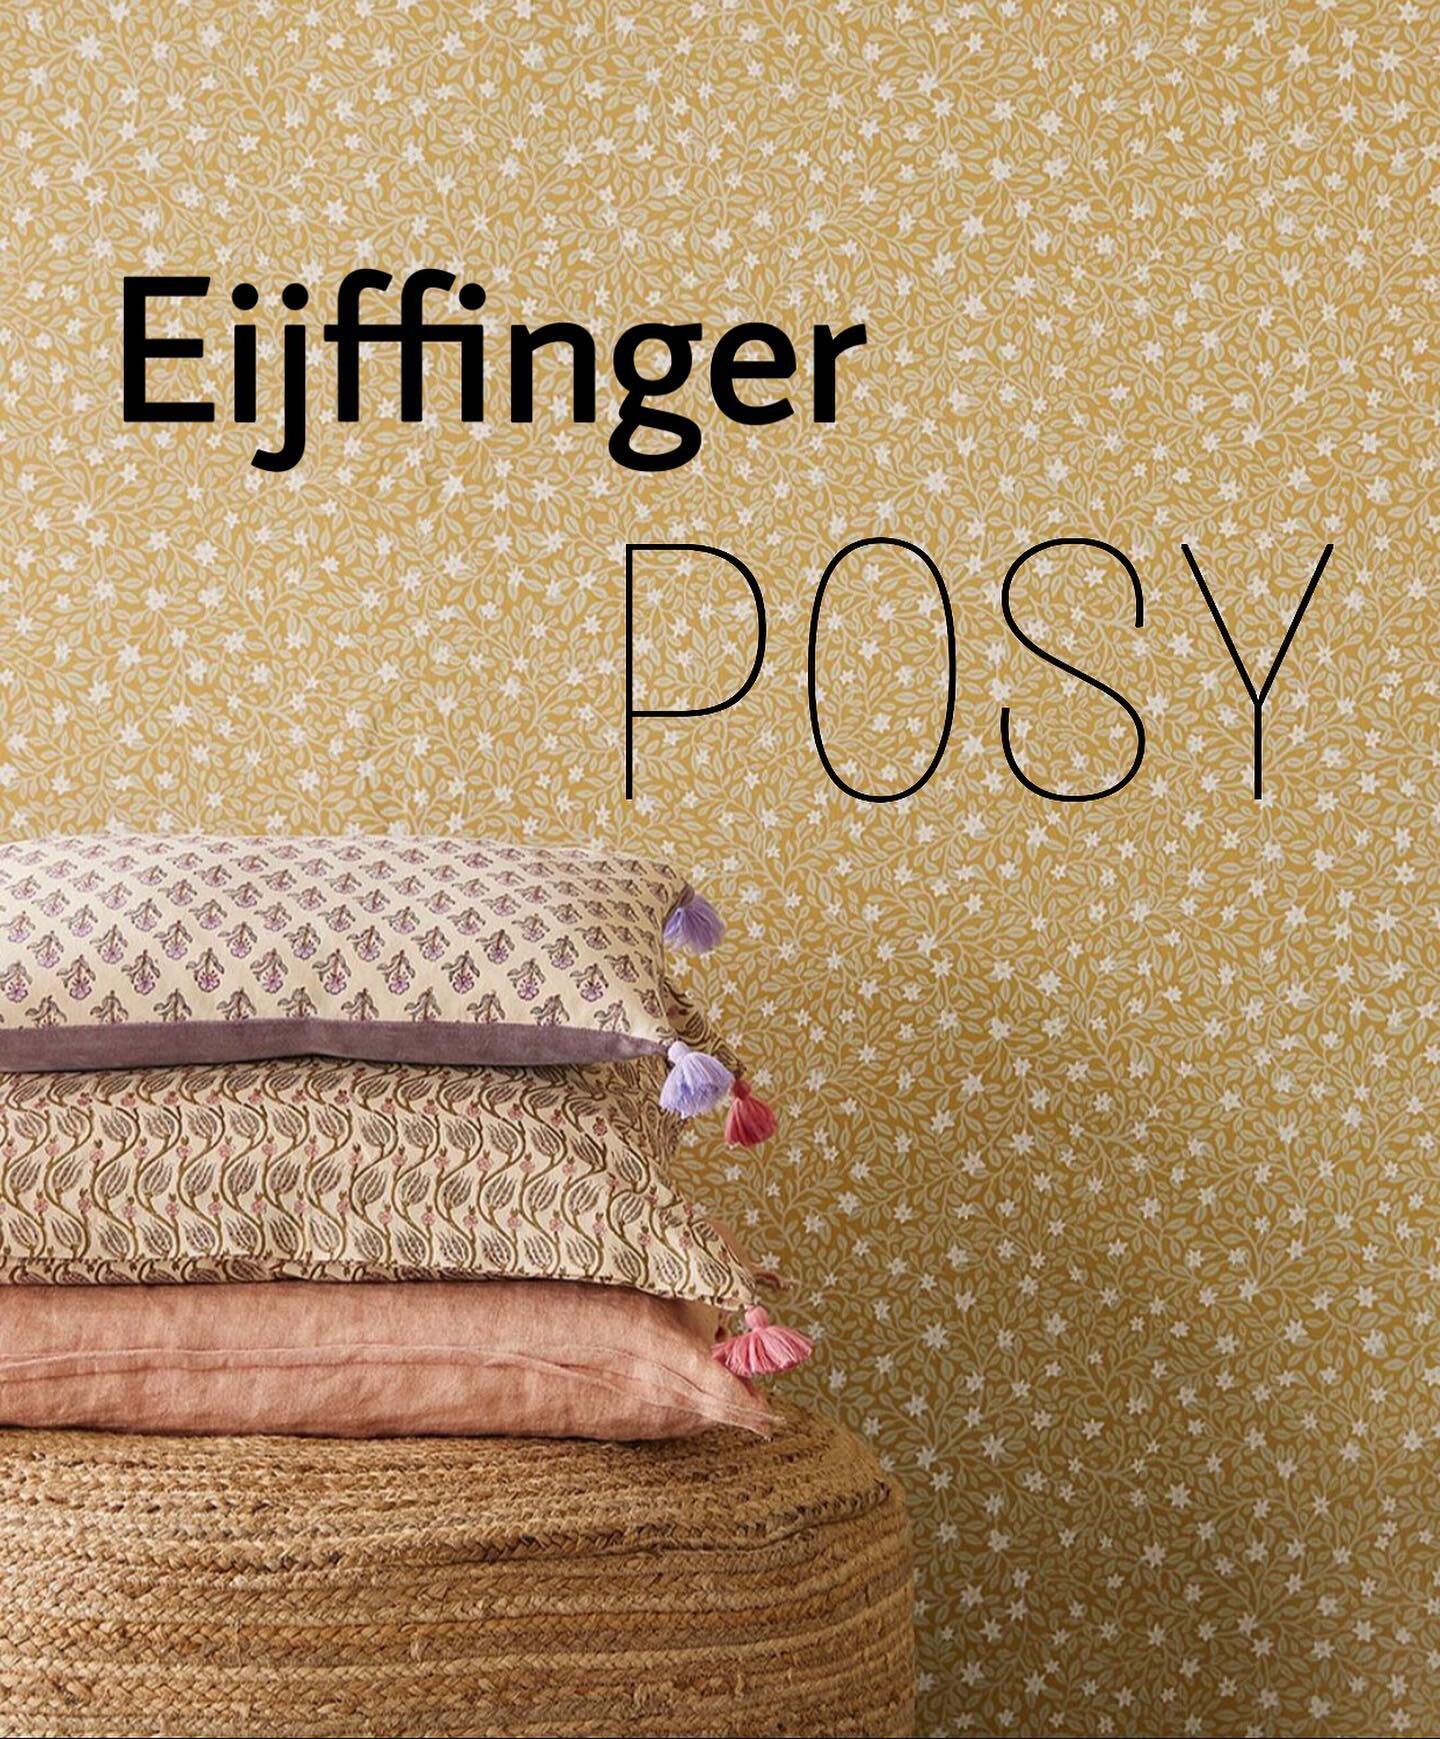 Zeg het met bloemen! 💐
De nieuwe weelderige collectie van @eijffinger ! Combineer vintage met hedendaags. Je muren zijn altijd in bloei met Posy 🌸